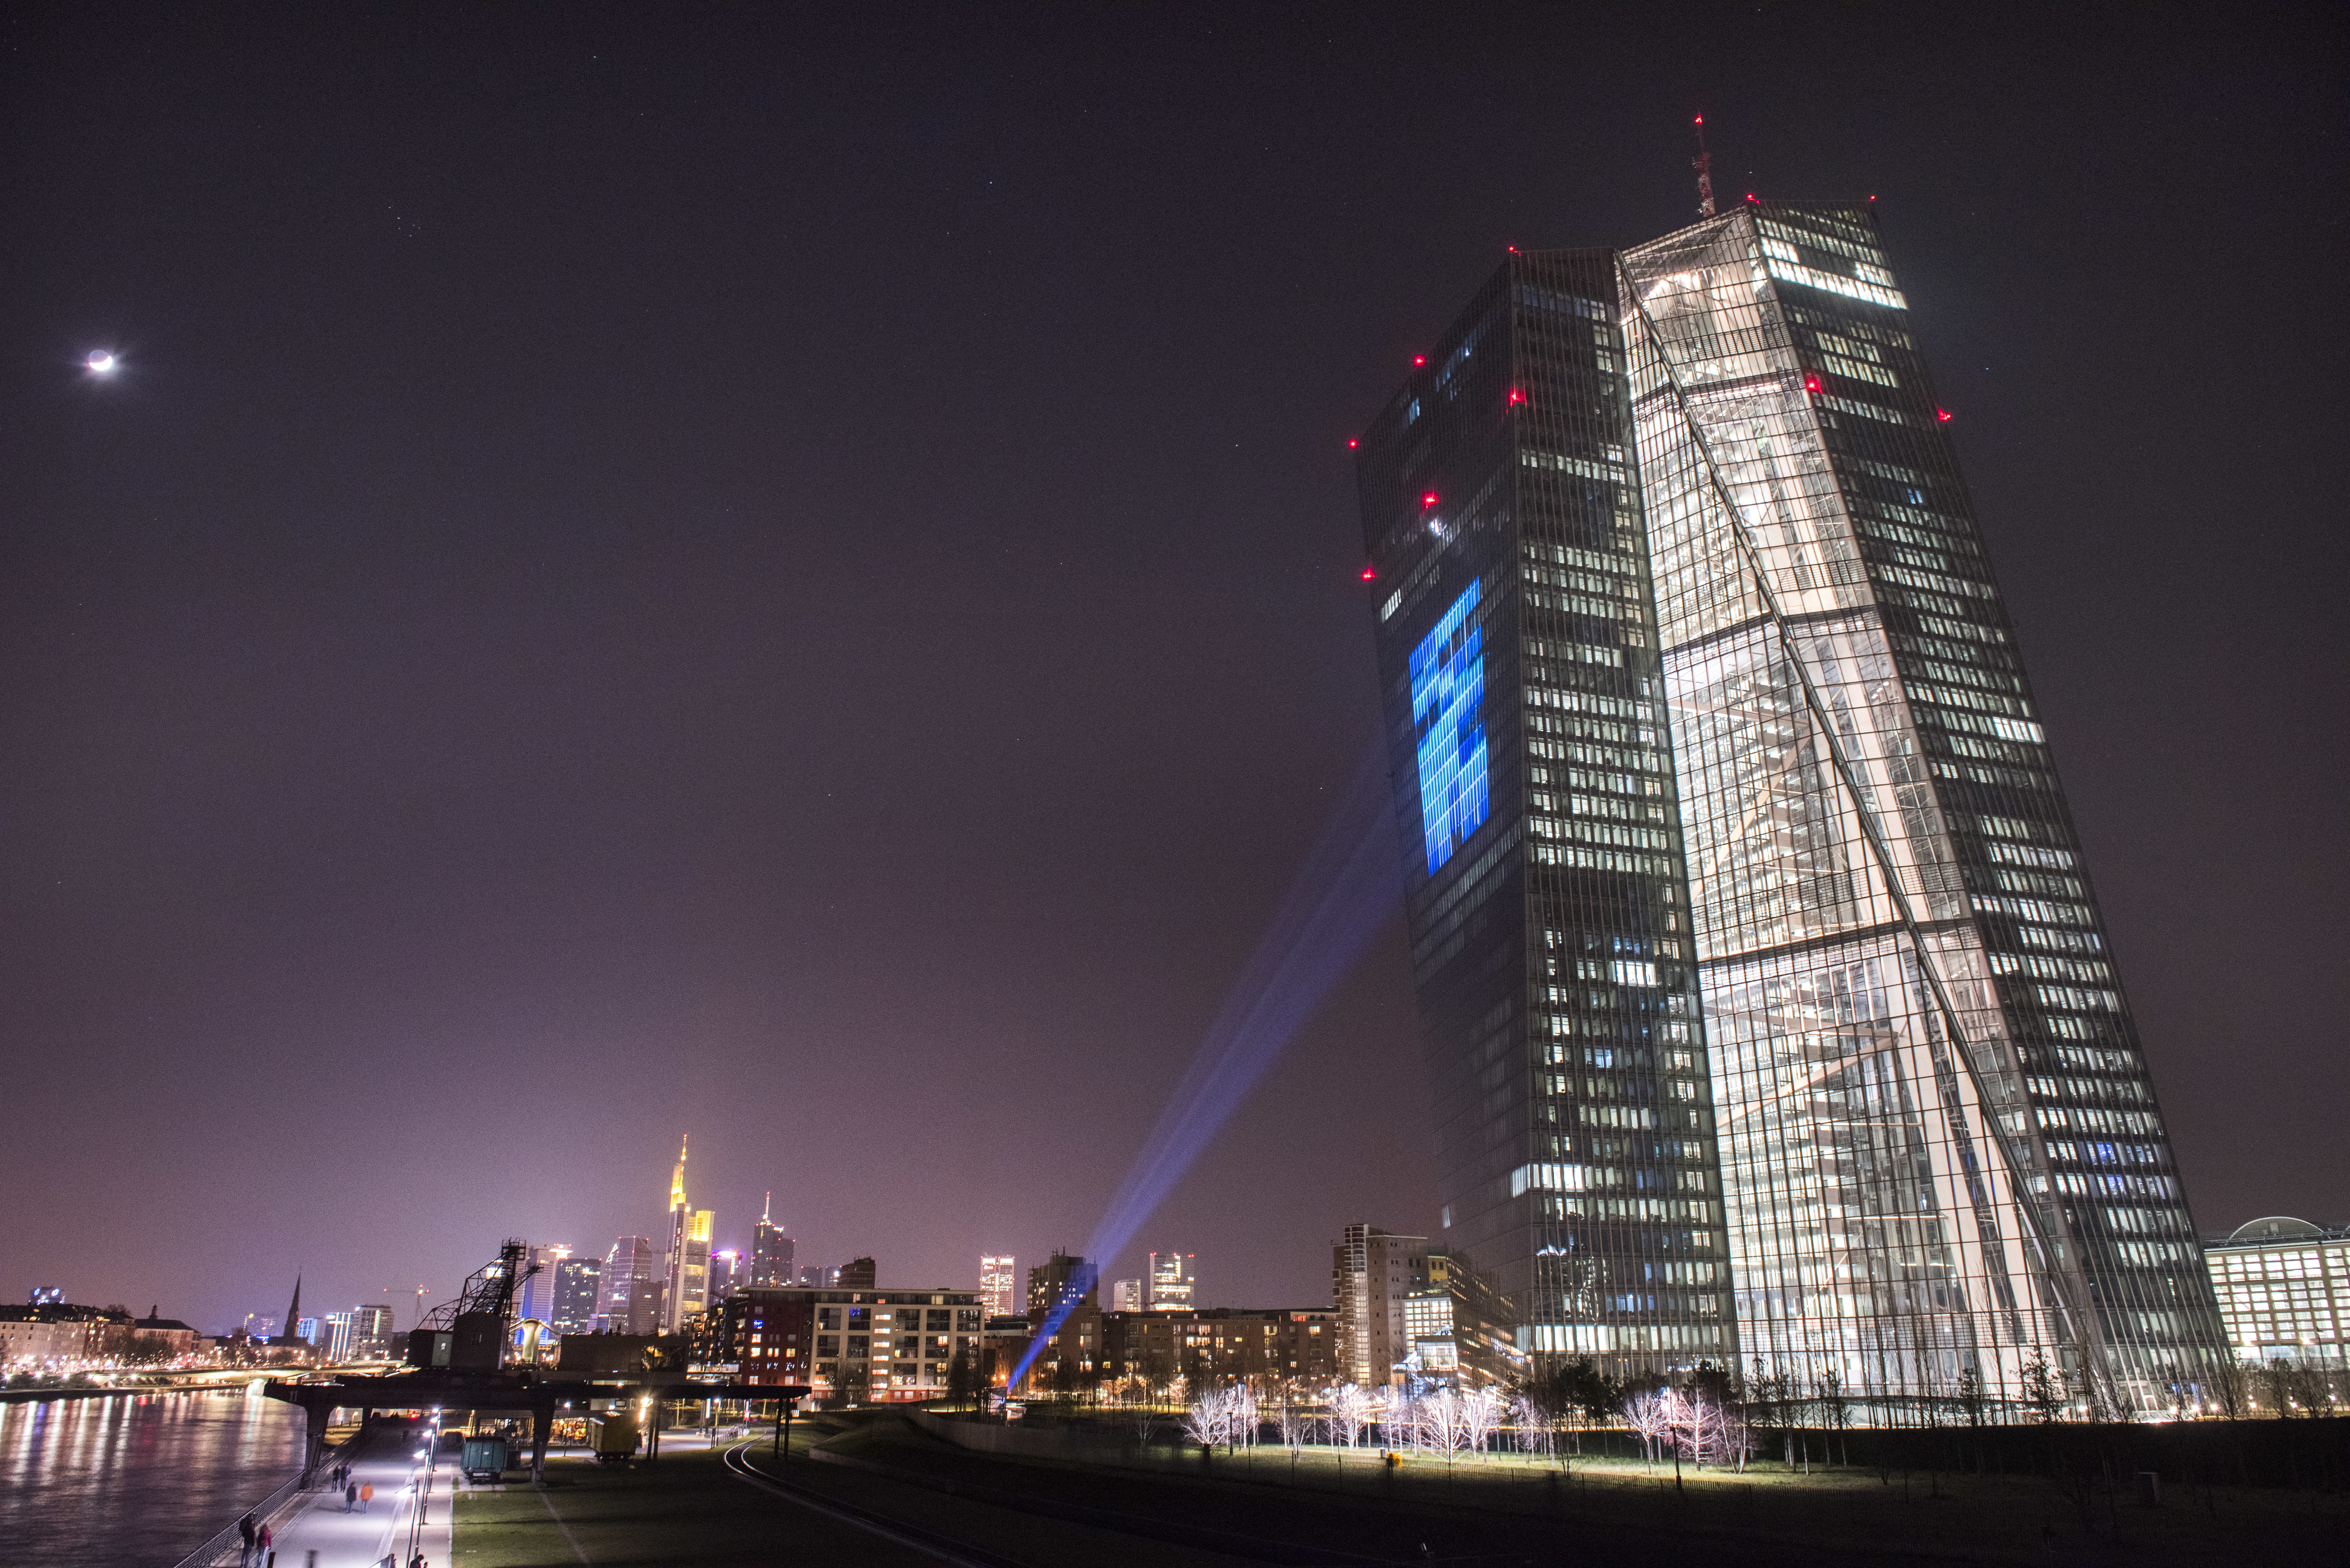 Az Európai Központi Bank új épülete, a háttérben a frankfurt skyline.